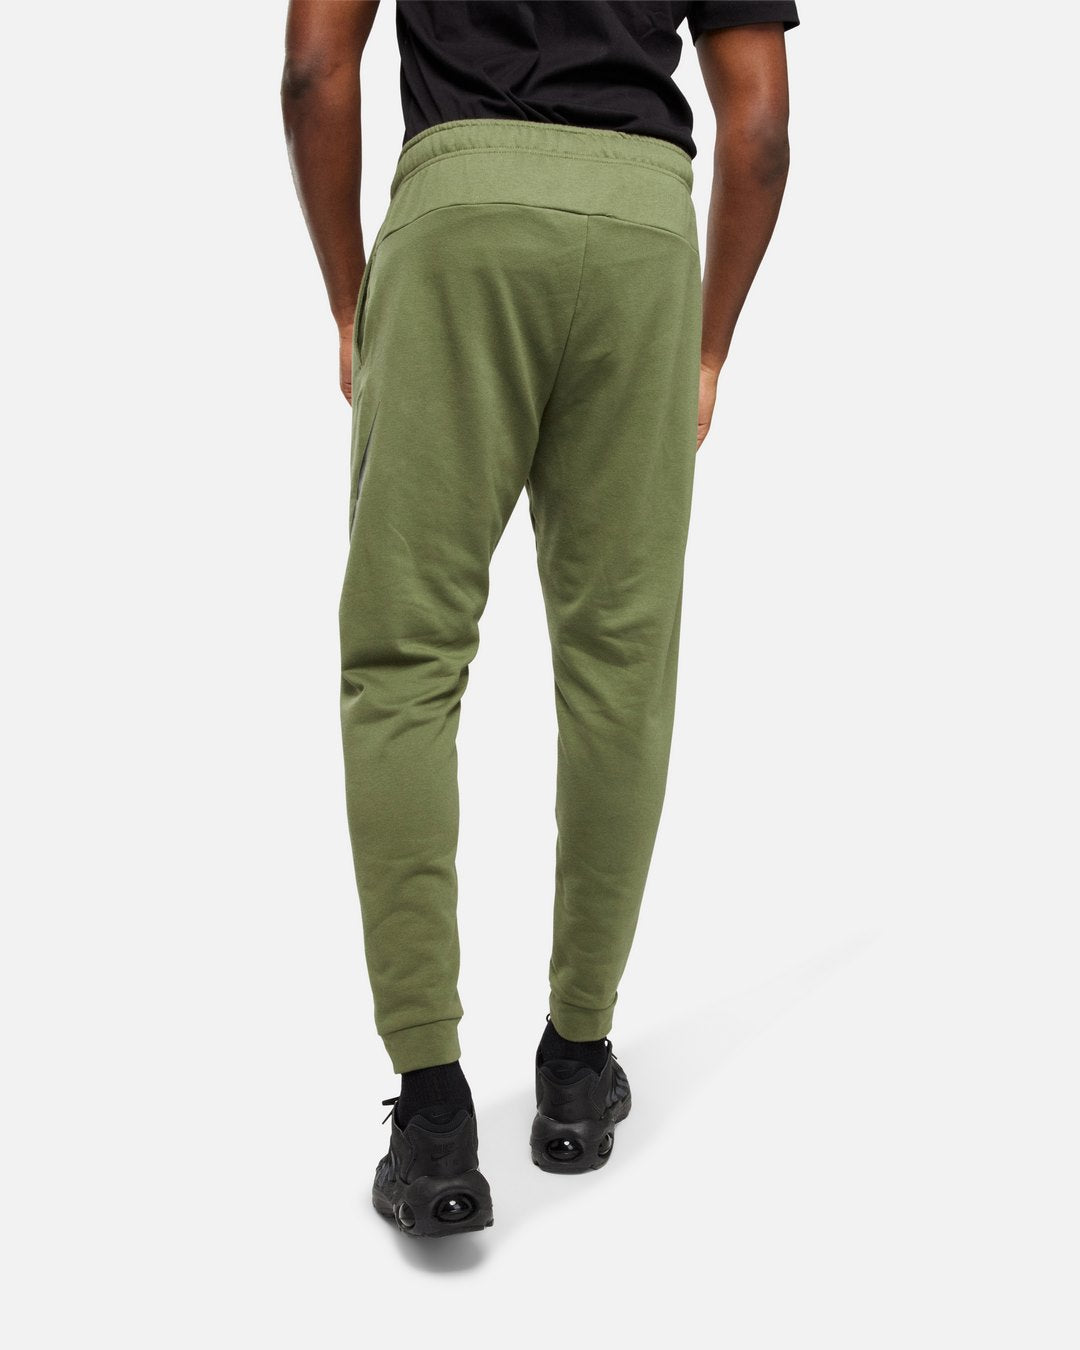 Nike Dry Graphic Pants - Khaki/Black